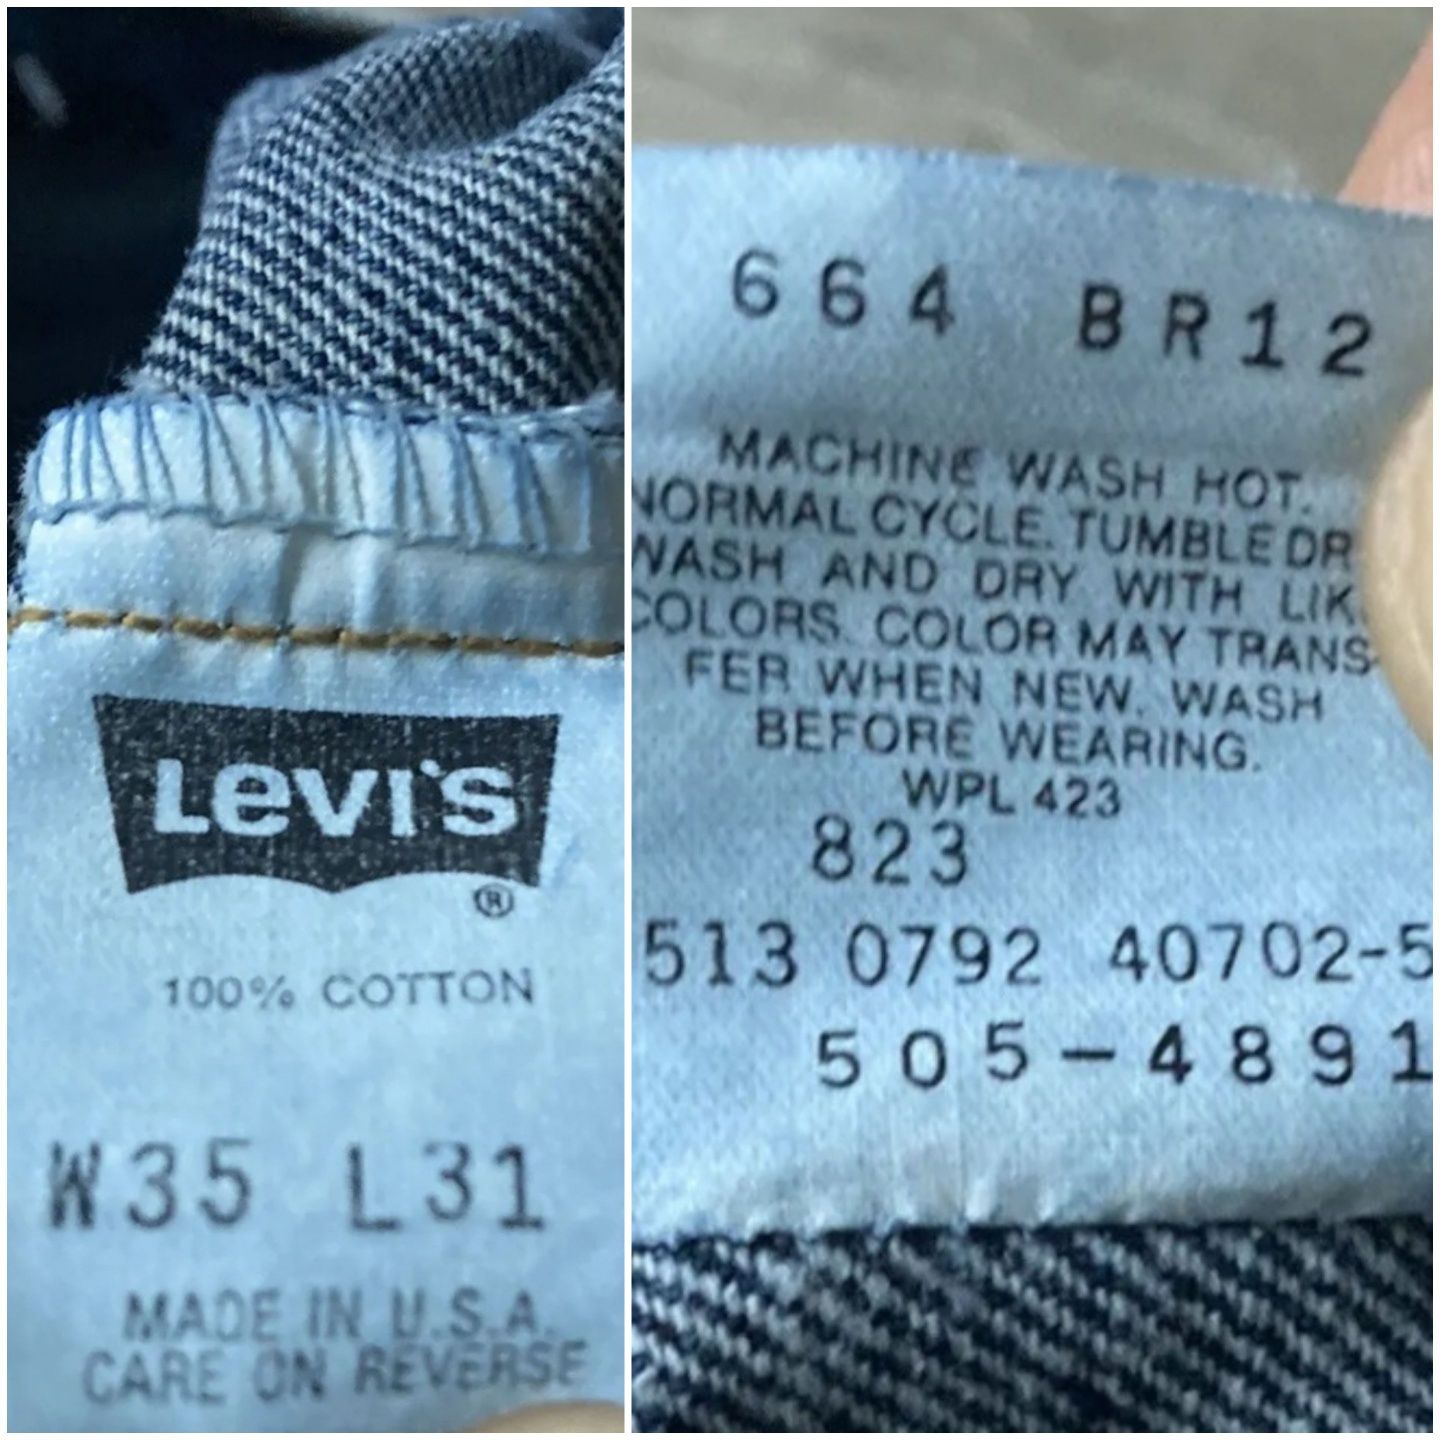 Винтажные джинсы Levi's 505 USA